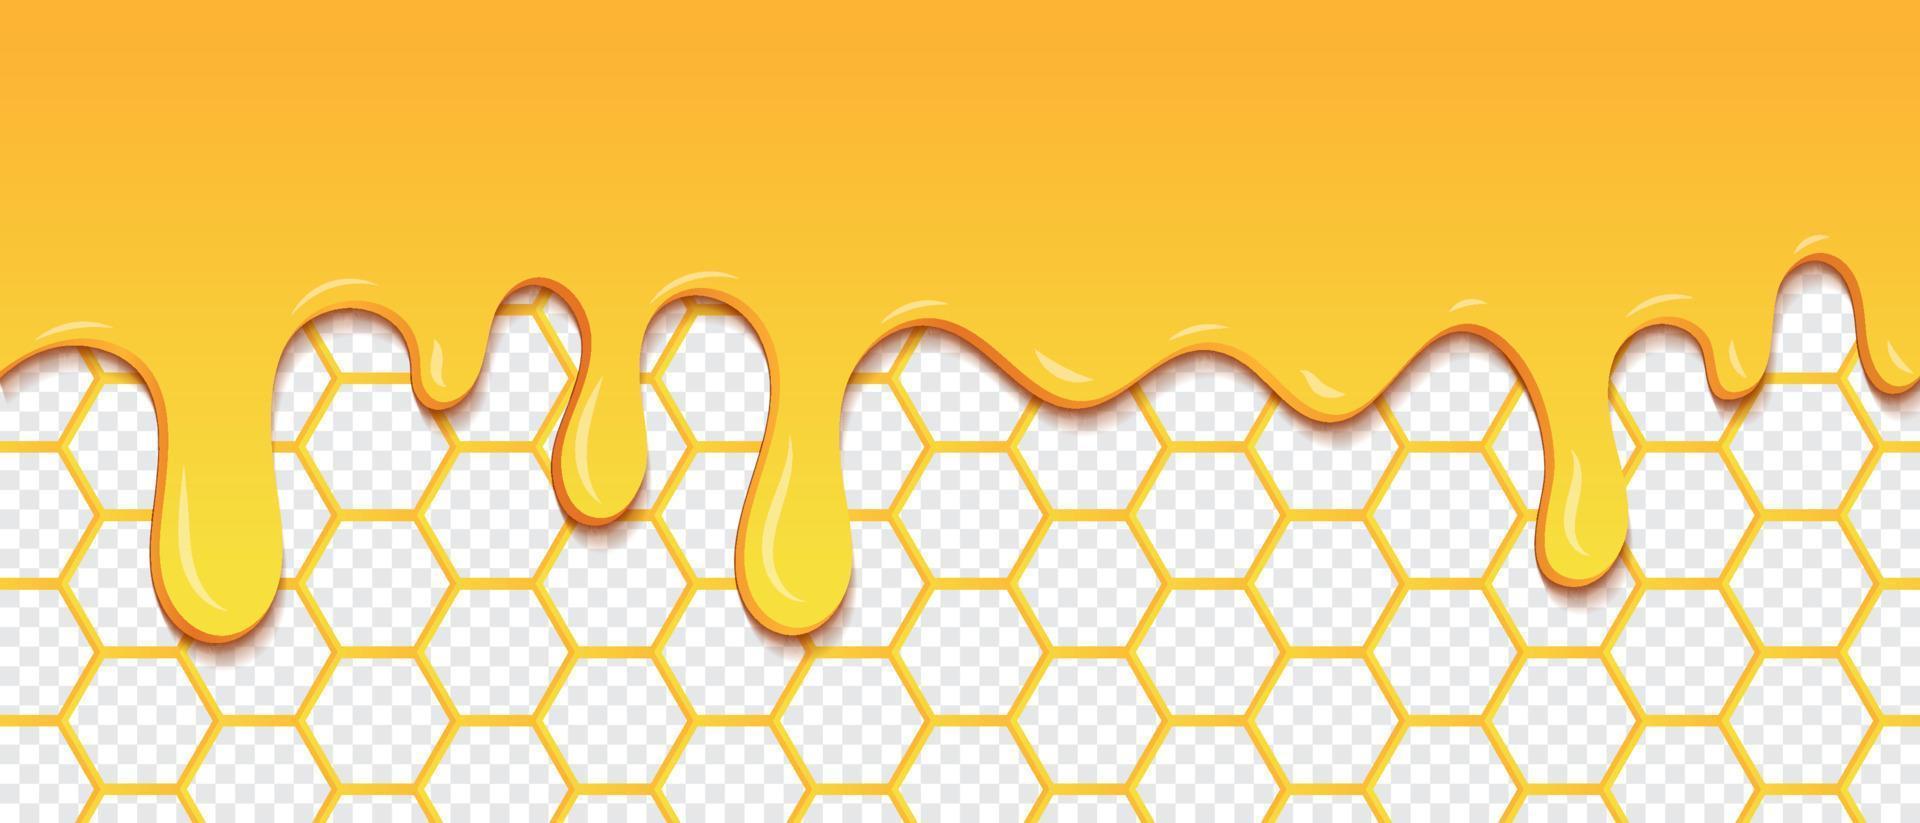 patrón amarillo con gotas de panal y miel. goteo de patrones sin fisuras de miel. textura transparente de células hexagonales de miel dorada. ilustración vectorial vector